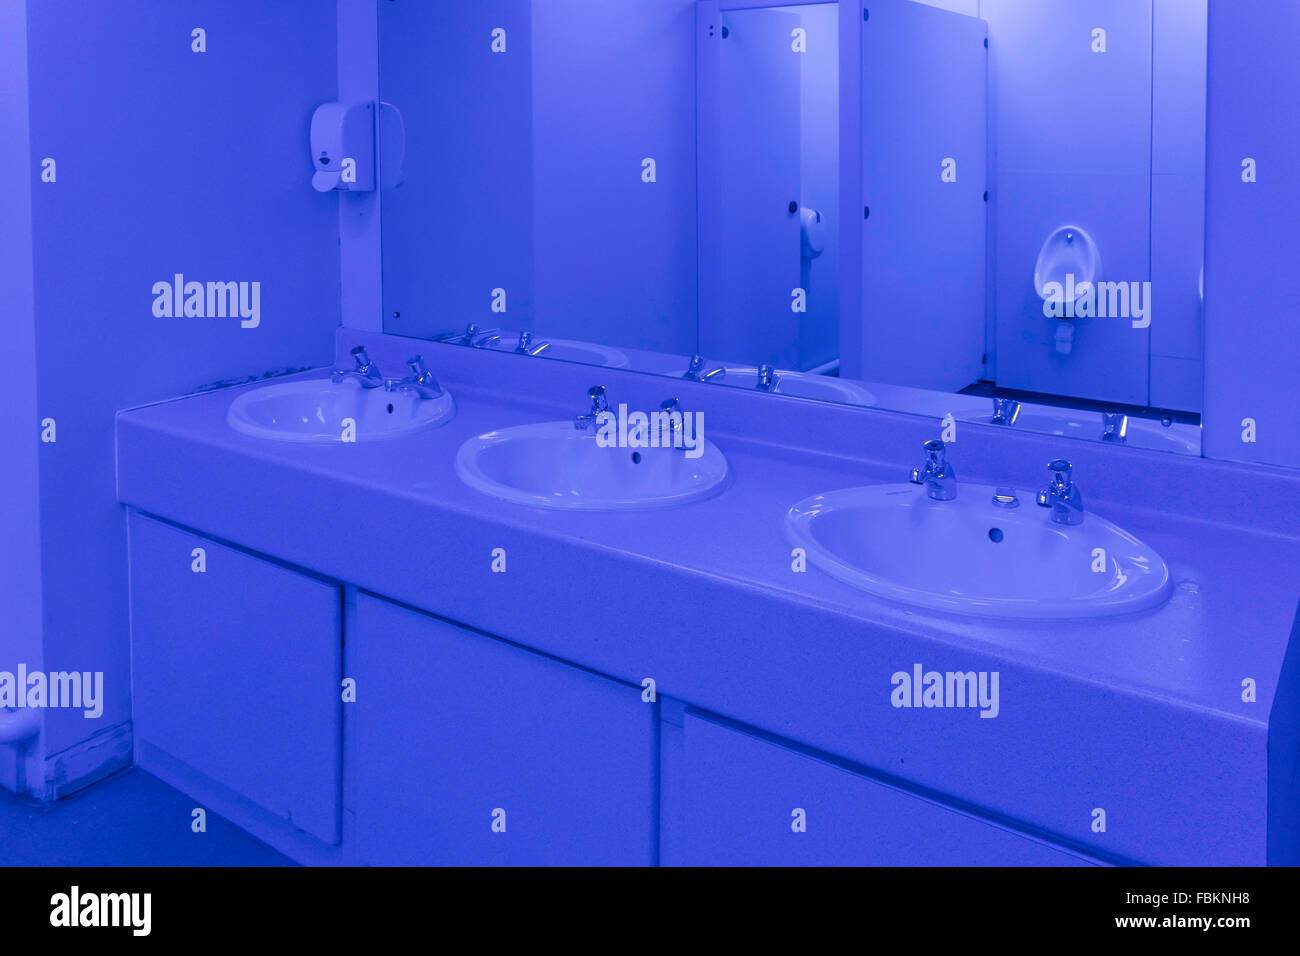 Toilette dans un gentlemen's Public éclairé avec lumière bleue pour décourager l'abus de drogues en empêchant les utilisateurs de voir leurs veines Banque D'Images